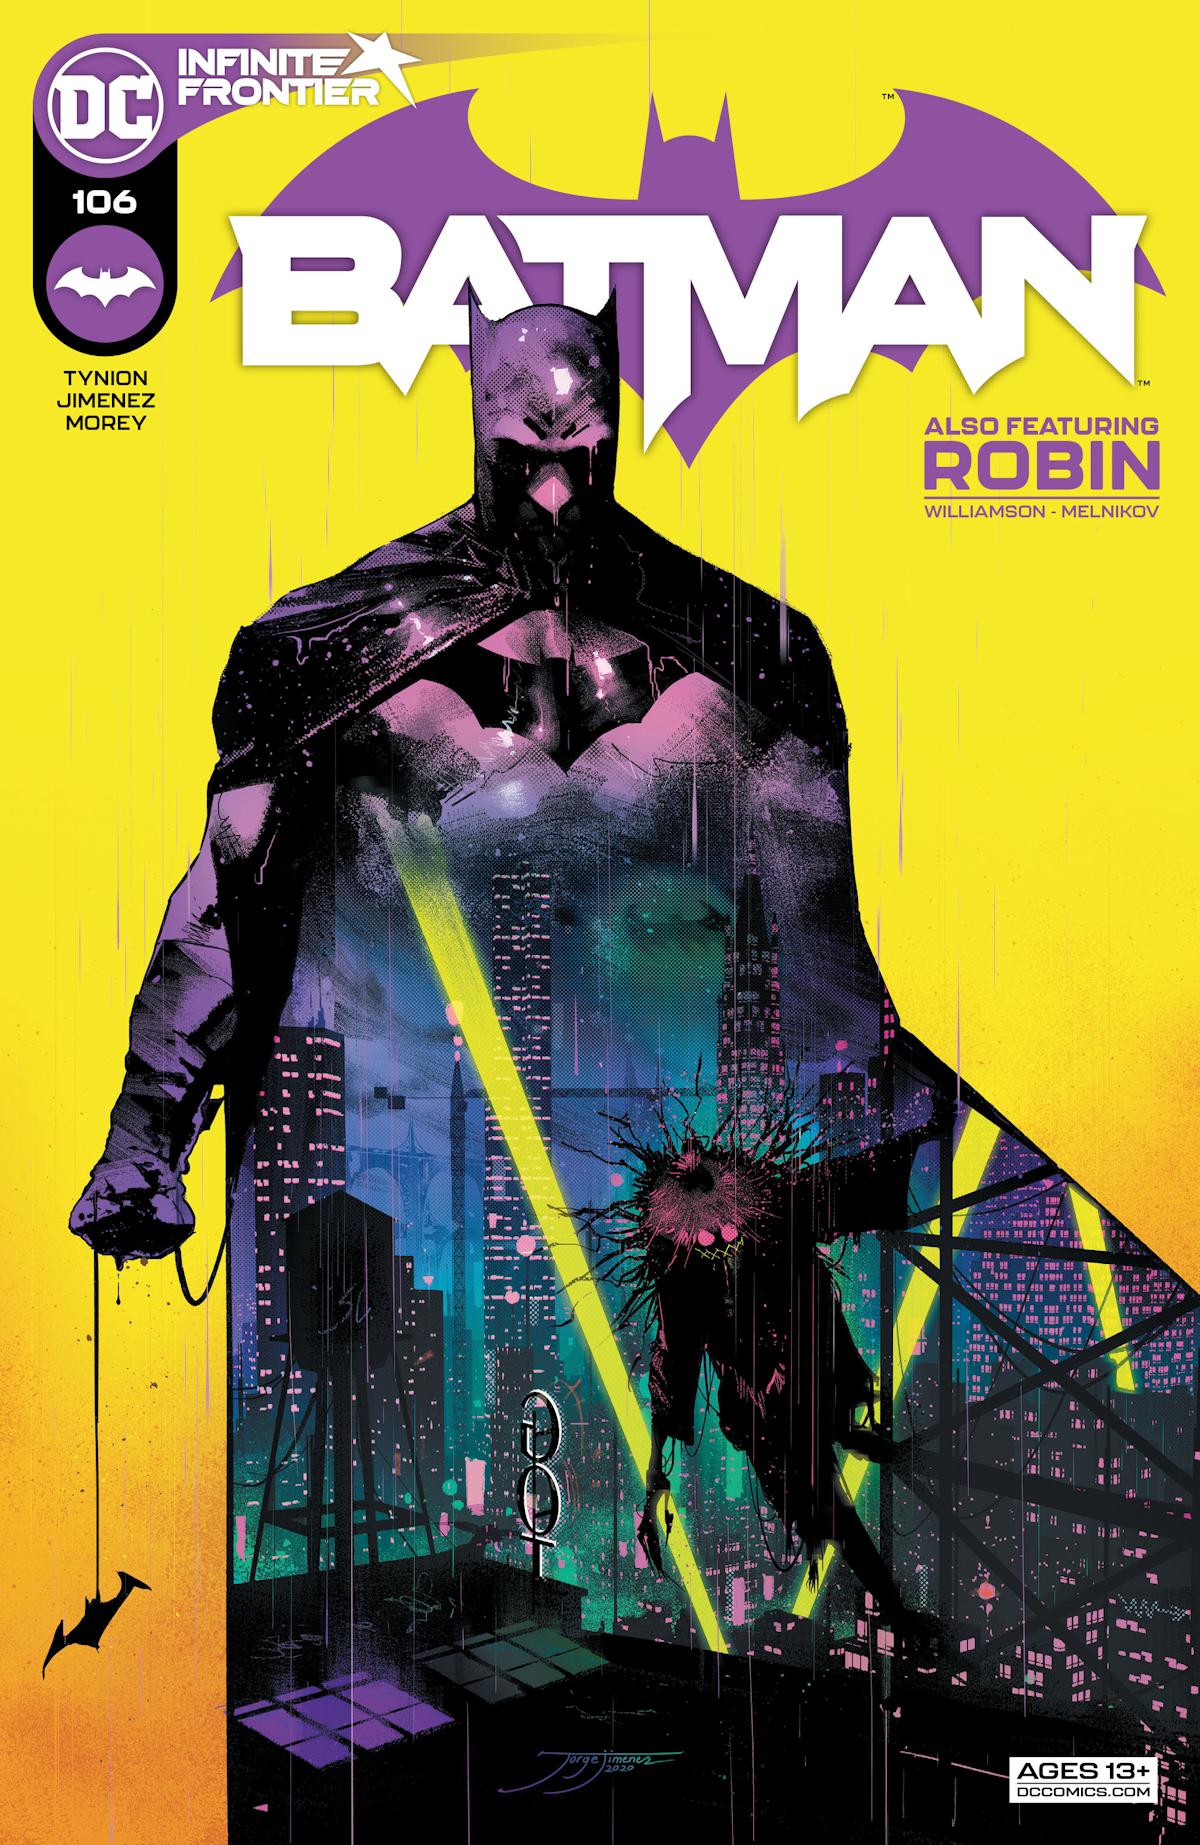 Batman Vol. 3 106 (Cover A)